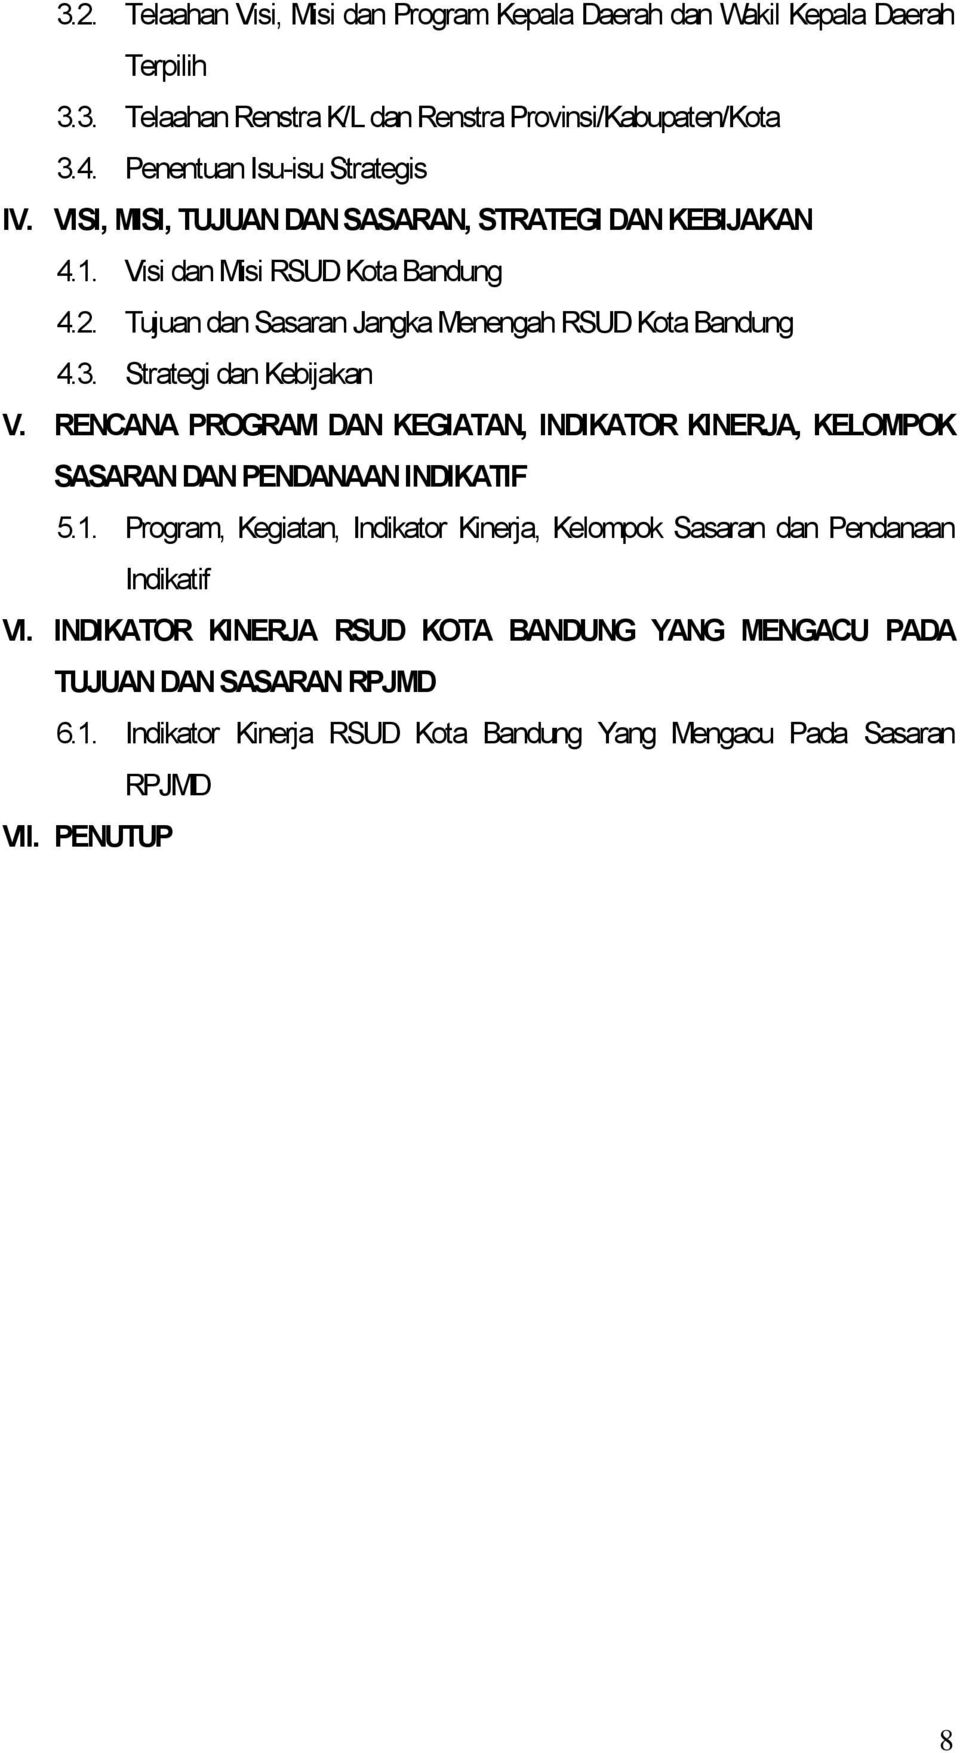 Tujuan dan Sasaran Jangka Menengah RSUD Kota Bandung 4.3. Strategi dan Kebijakan V. RENCANA PROGRAM DAN KEGIATAN, INDIKATOR KINERJA, KELOMPOK SASARAN DAN PENDANAAN INDIKATIF 5.